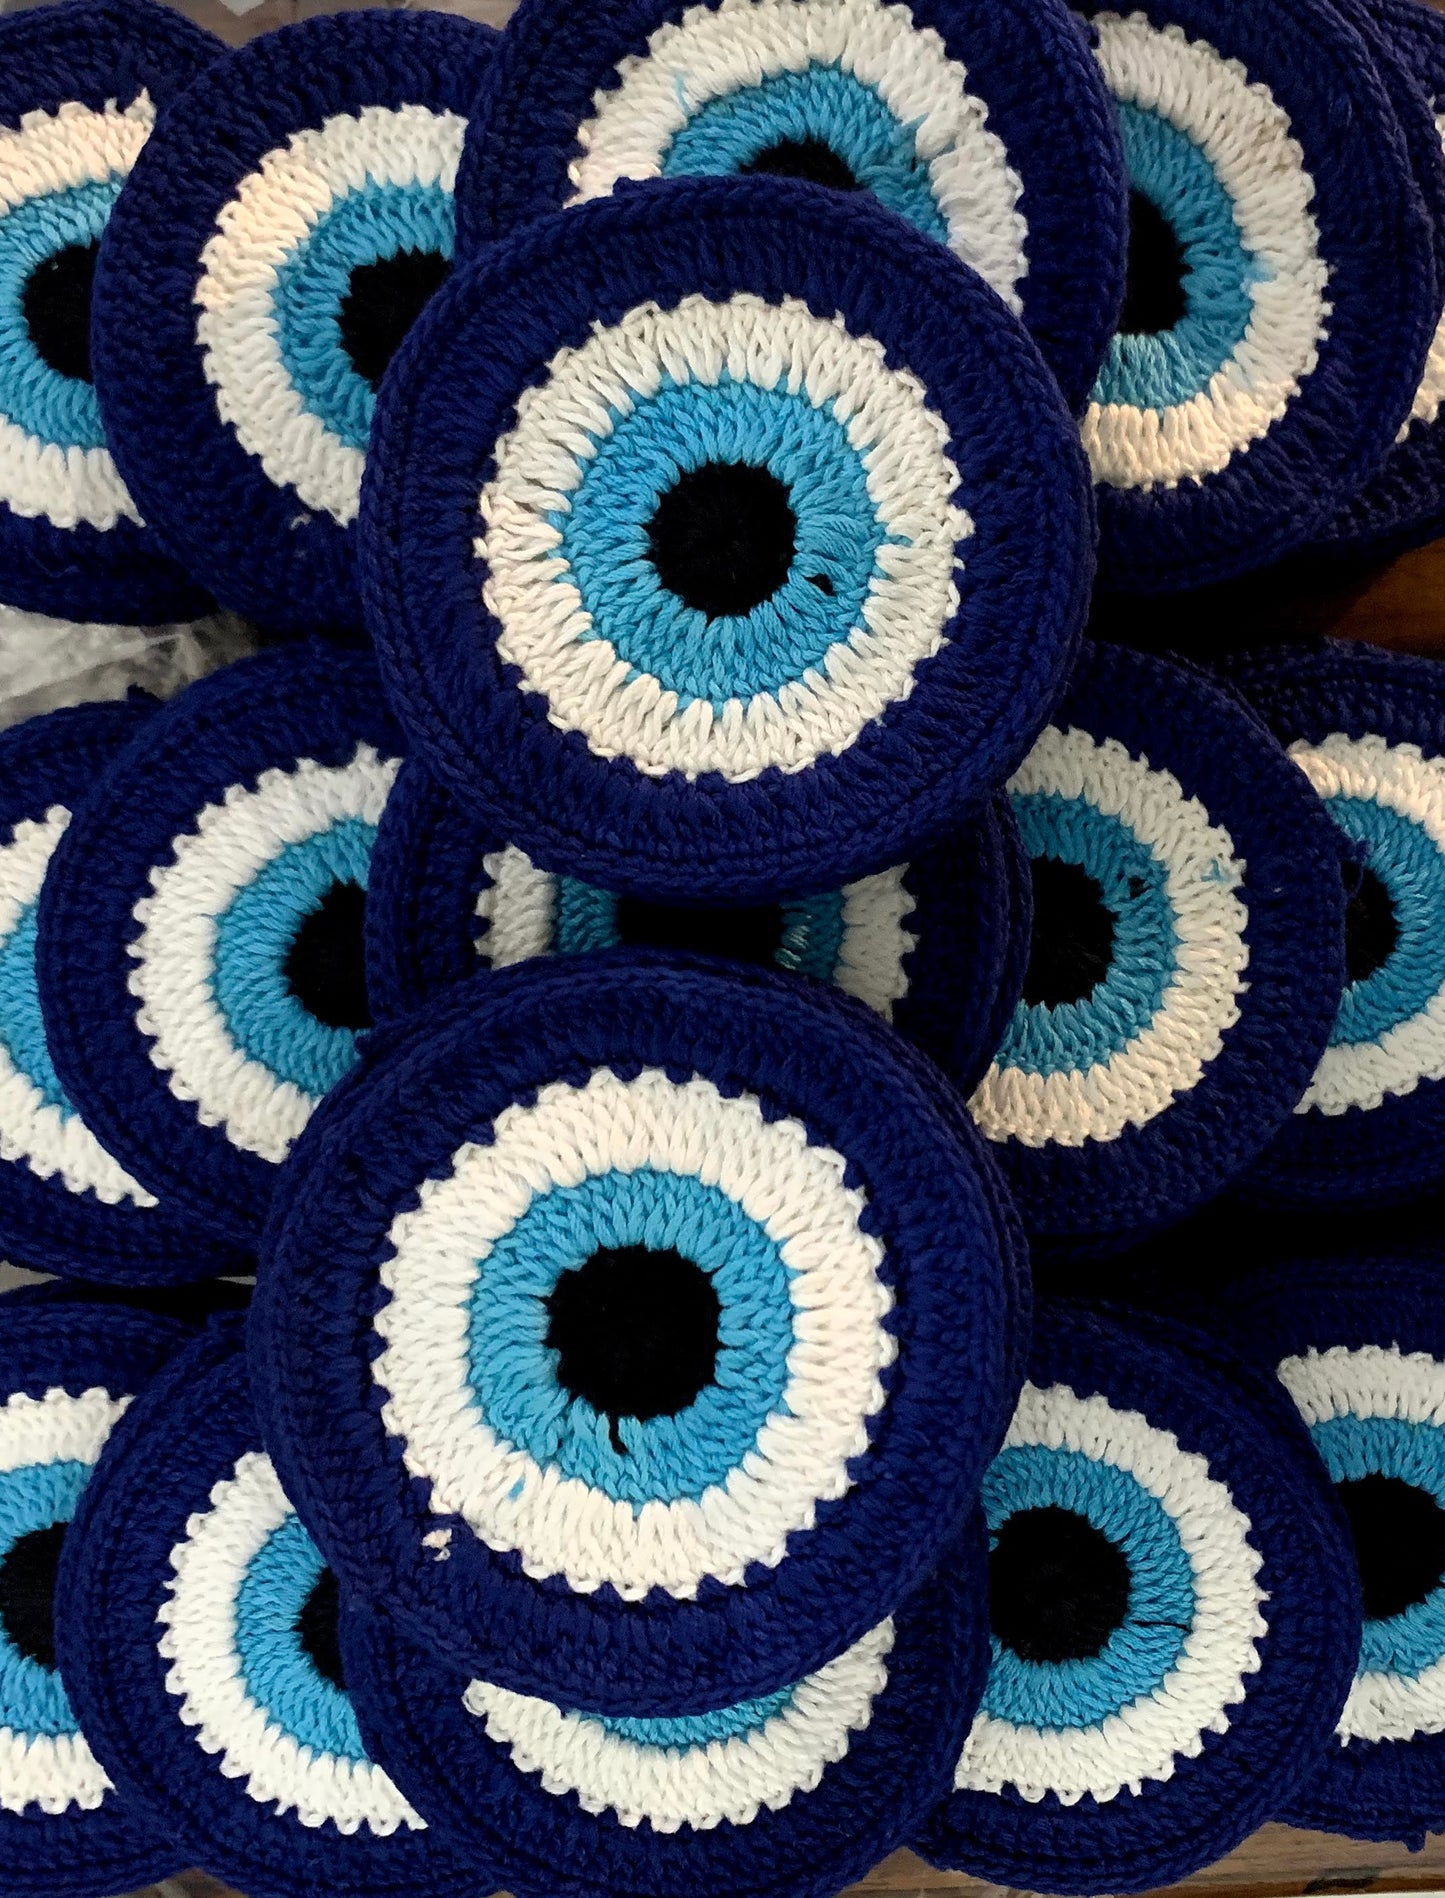 Evil Eye Crochet Top pattern designed by Moara Crochet